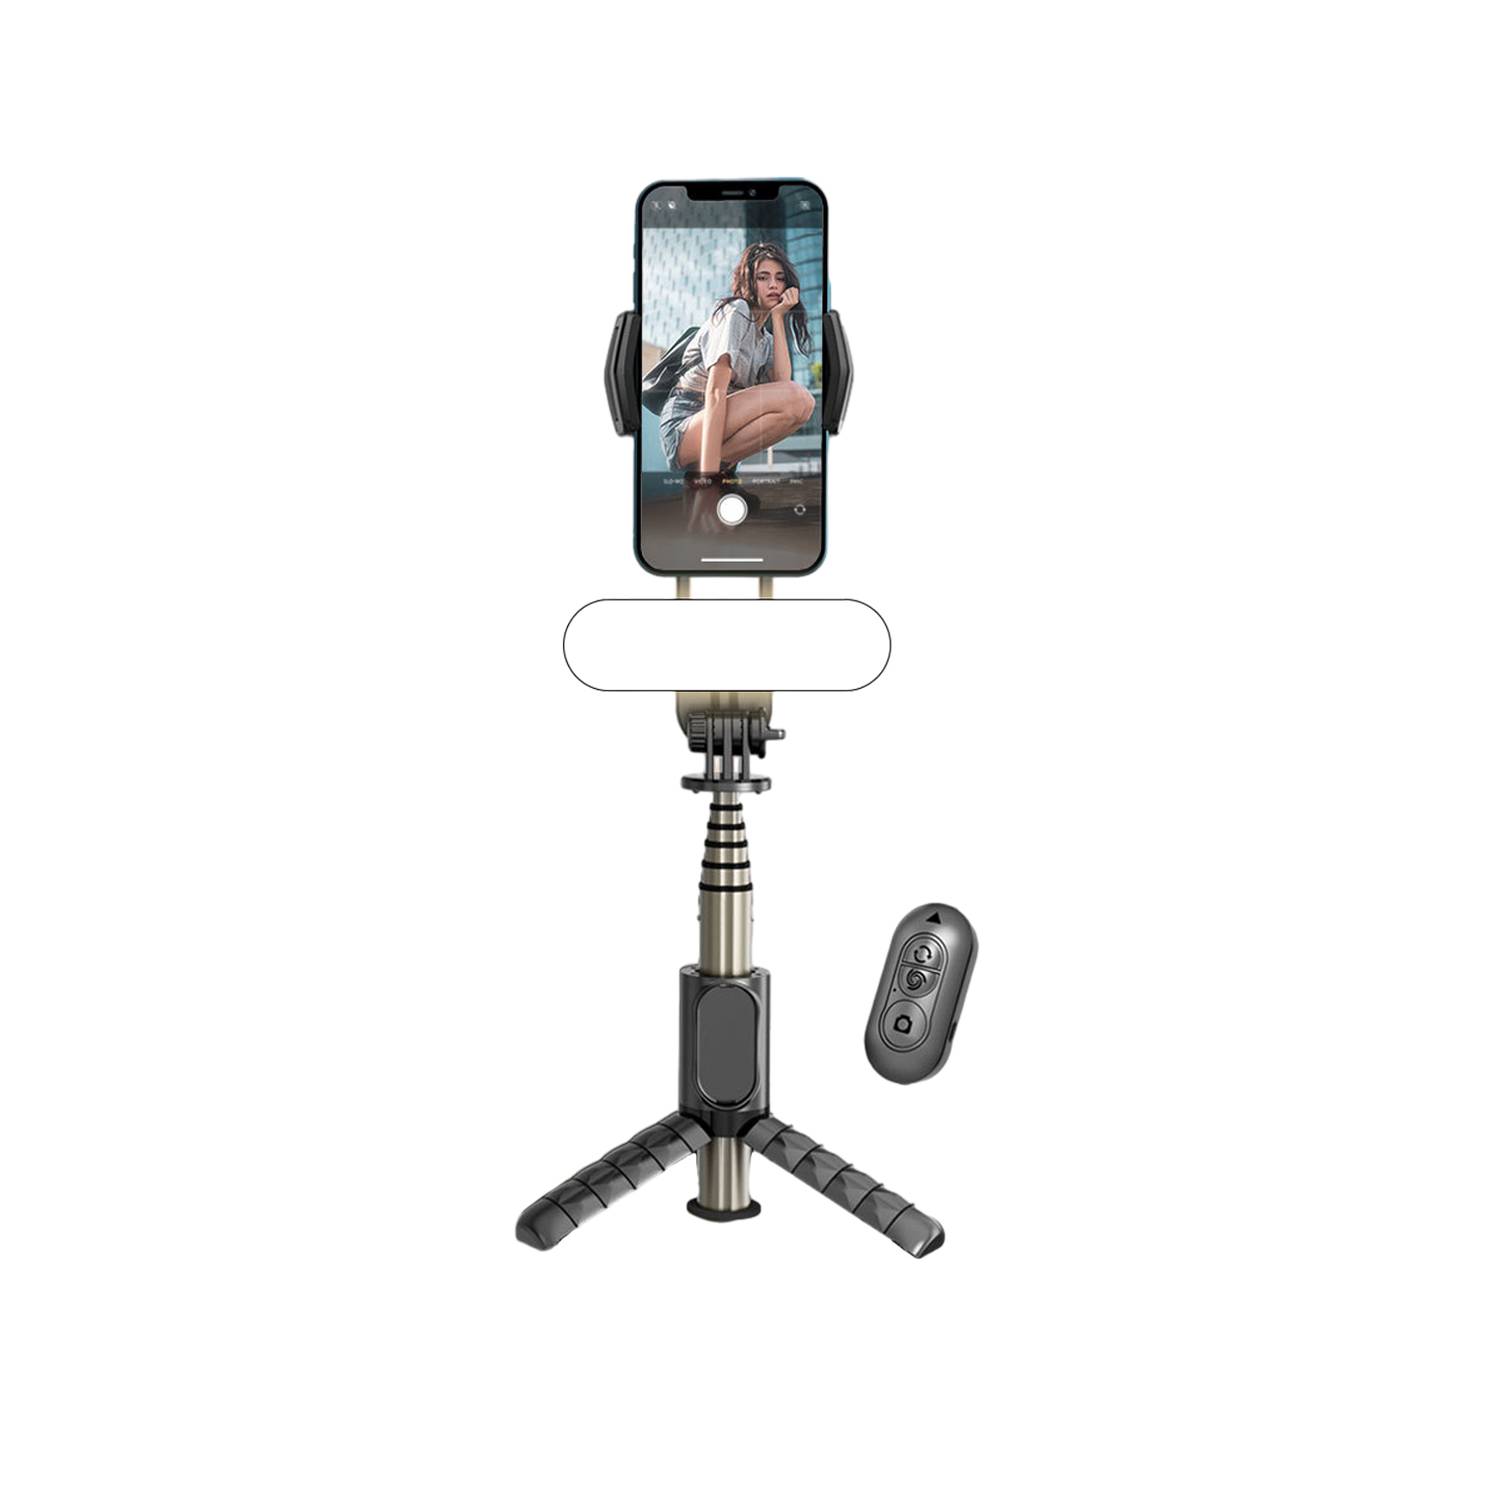 3-en-1 Palo Selfie Universal Bluetooth con Trípode - Negro